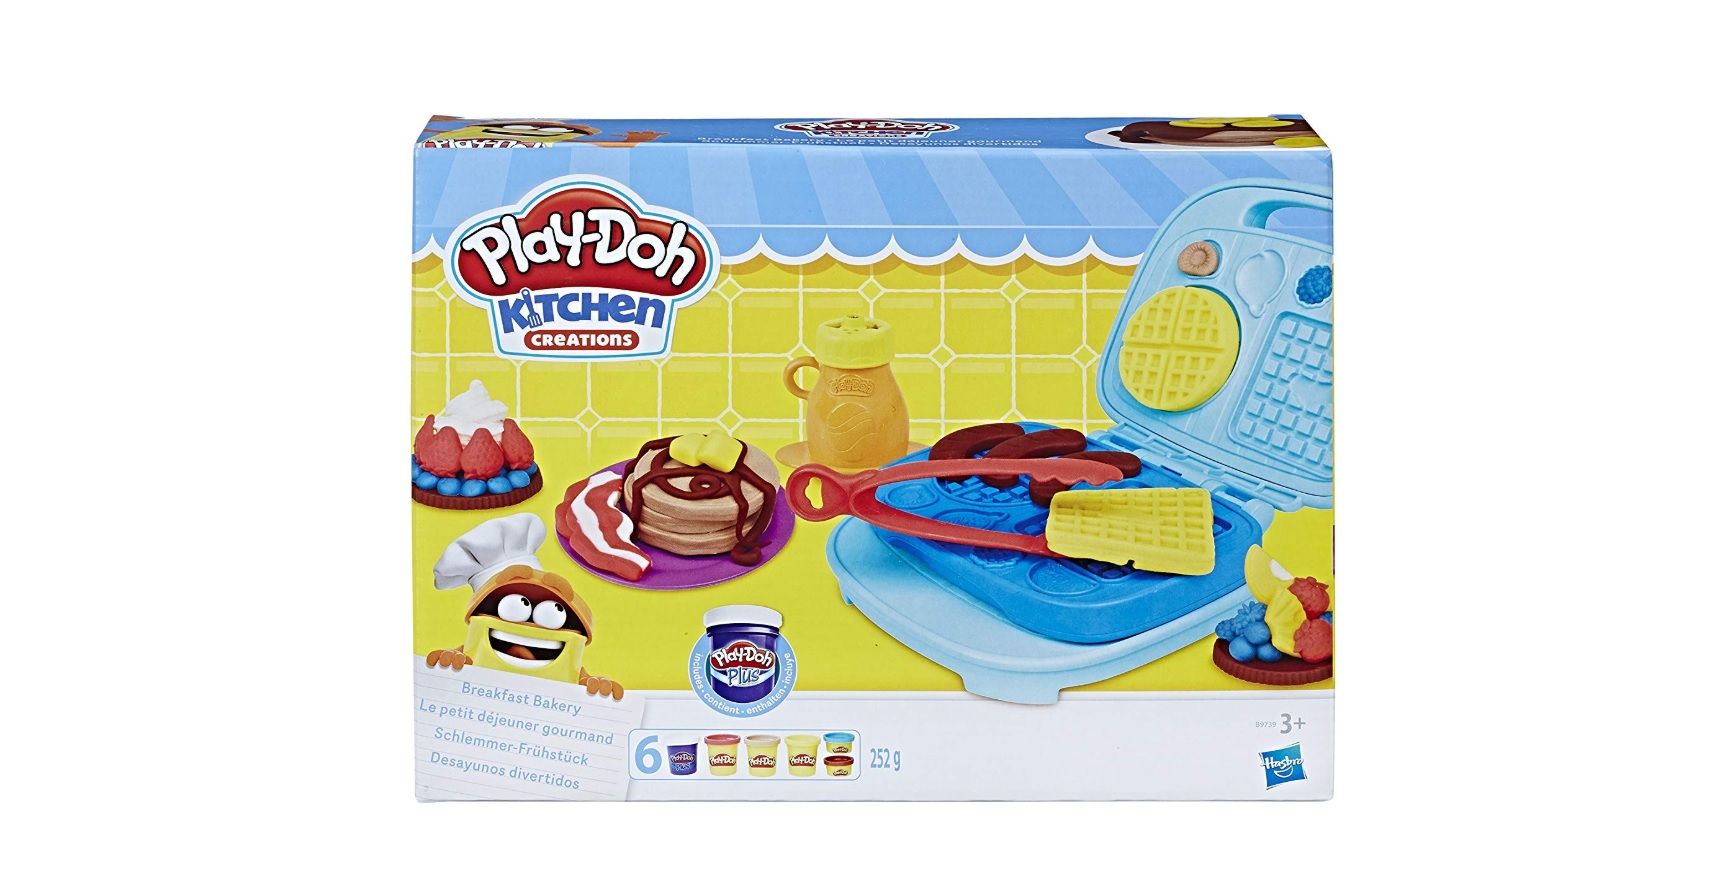 ¡Mitad de precio! Máquina de gofres Play-Doh por sólo 8,95€ (antes 17,99€)